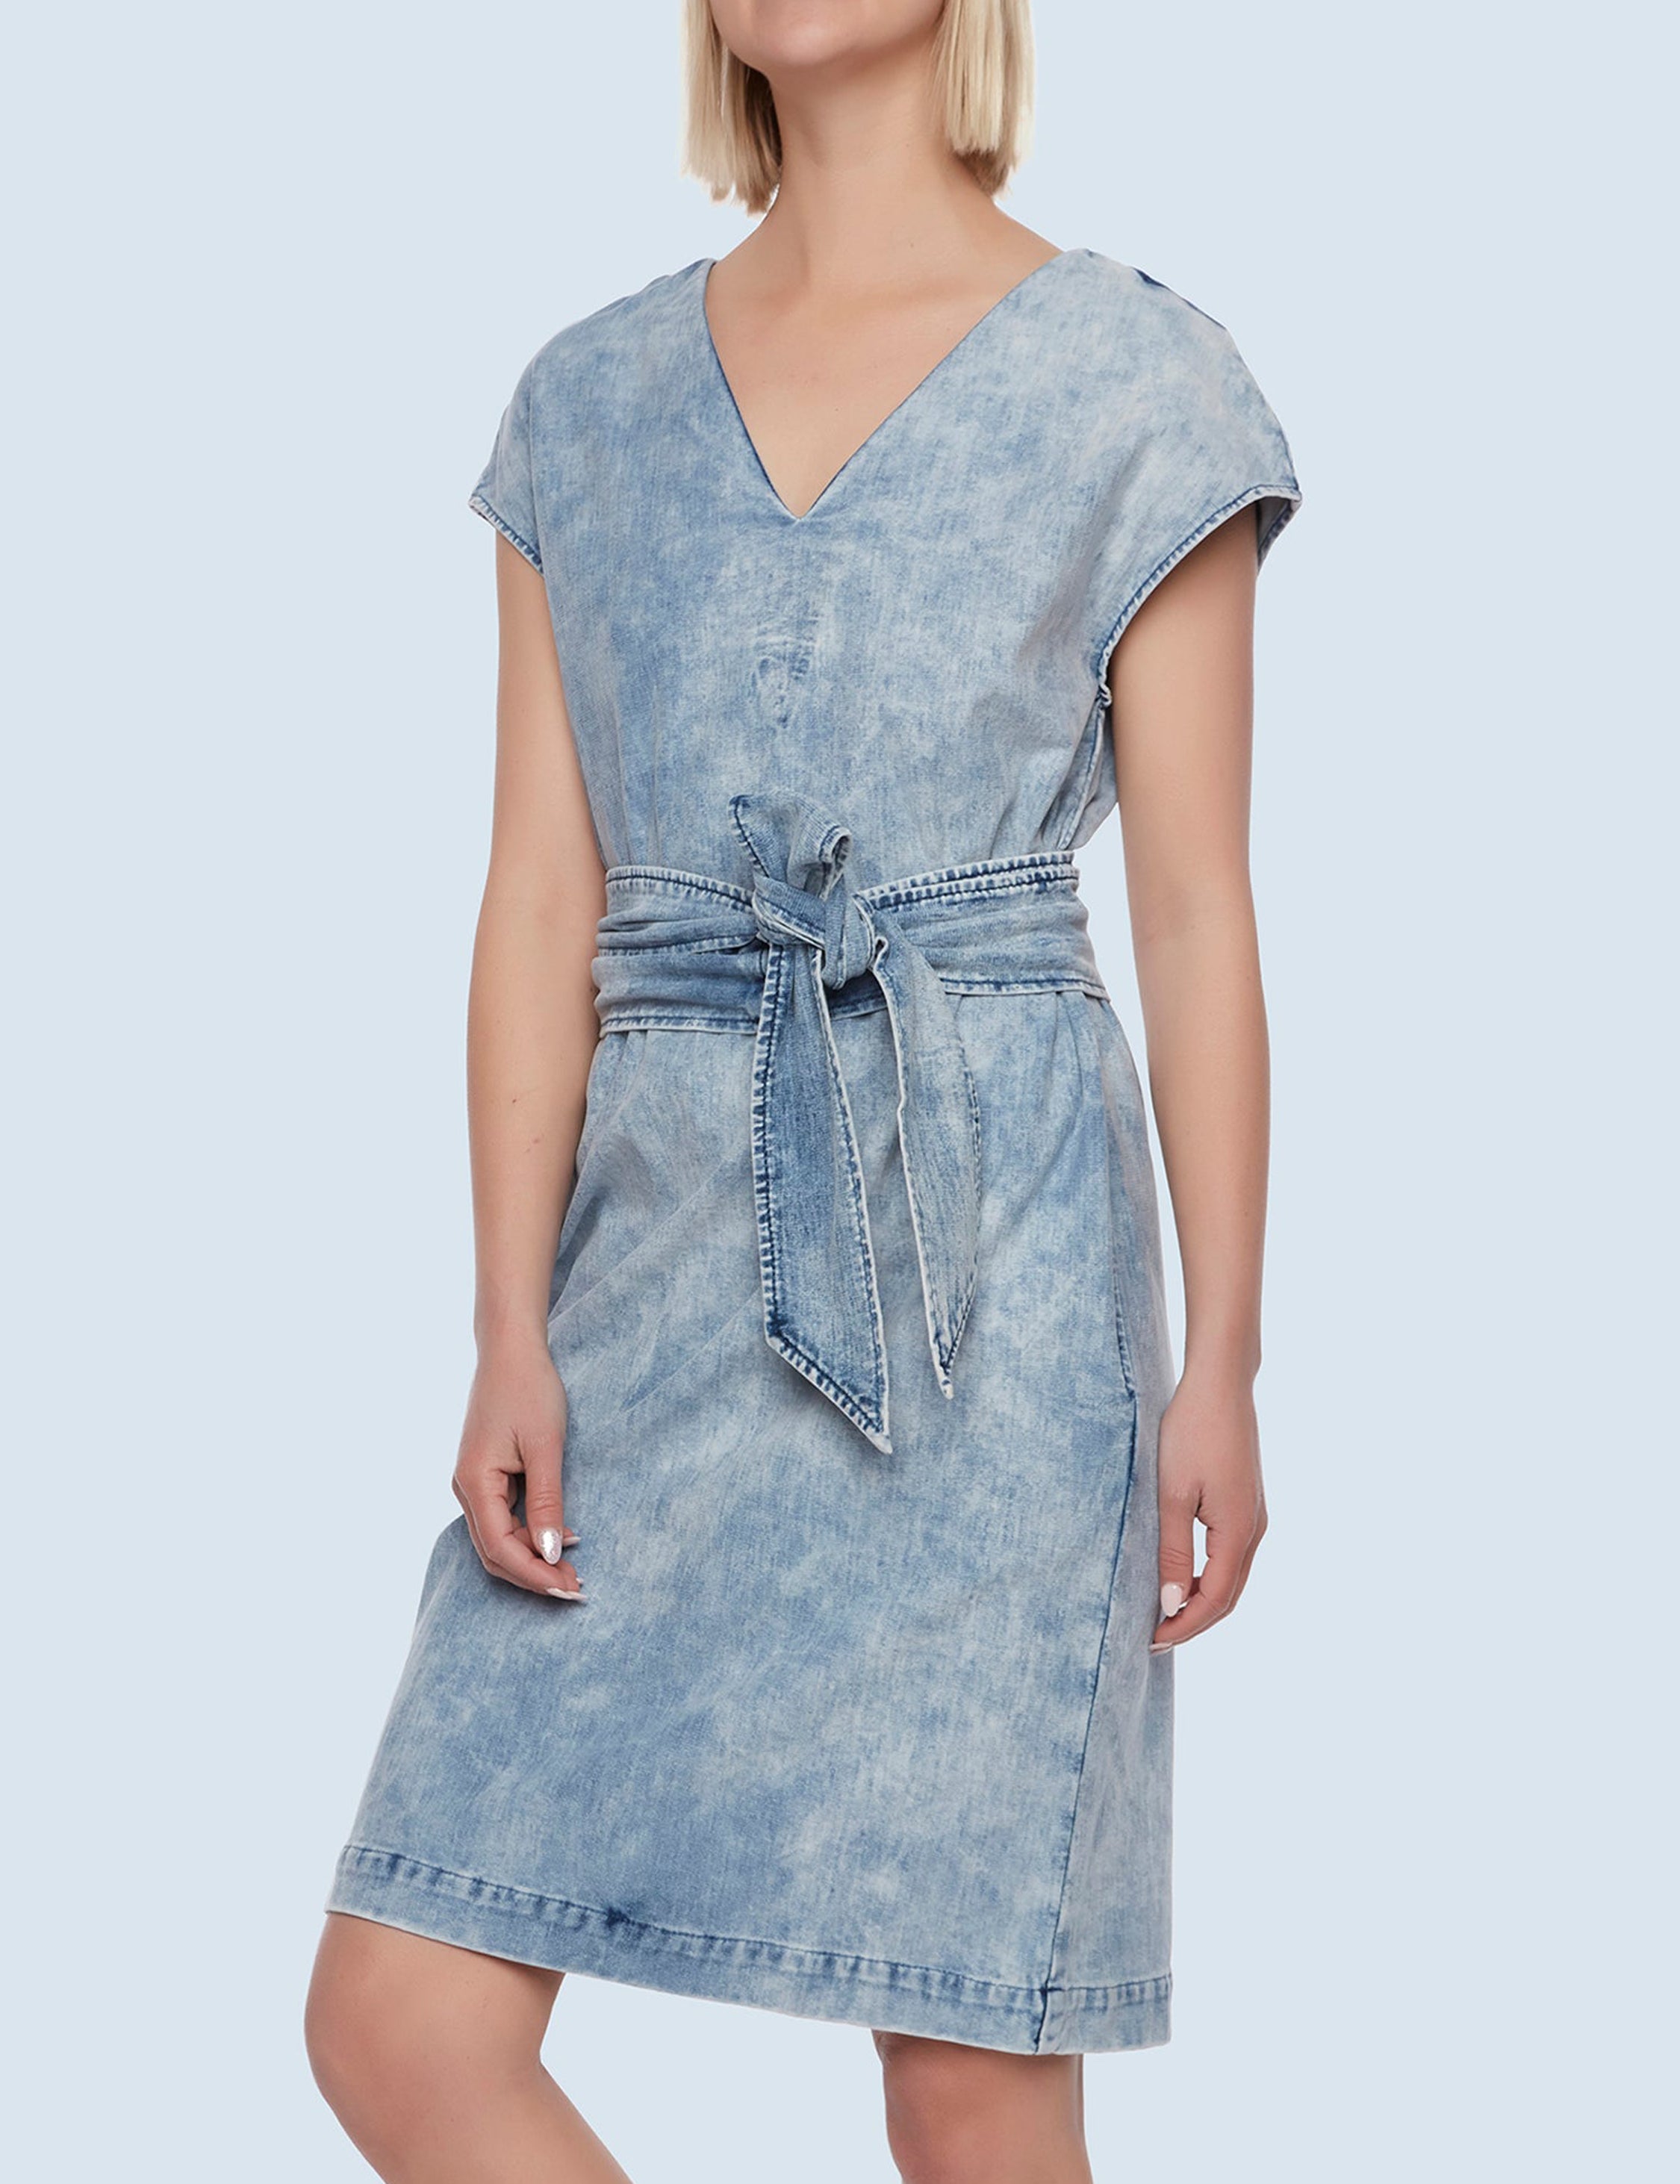 Dwi - Midi Knit Slip Dress – Essentialsthelabel